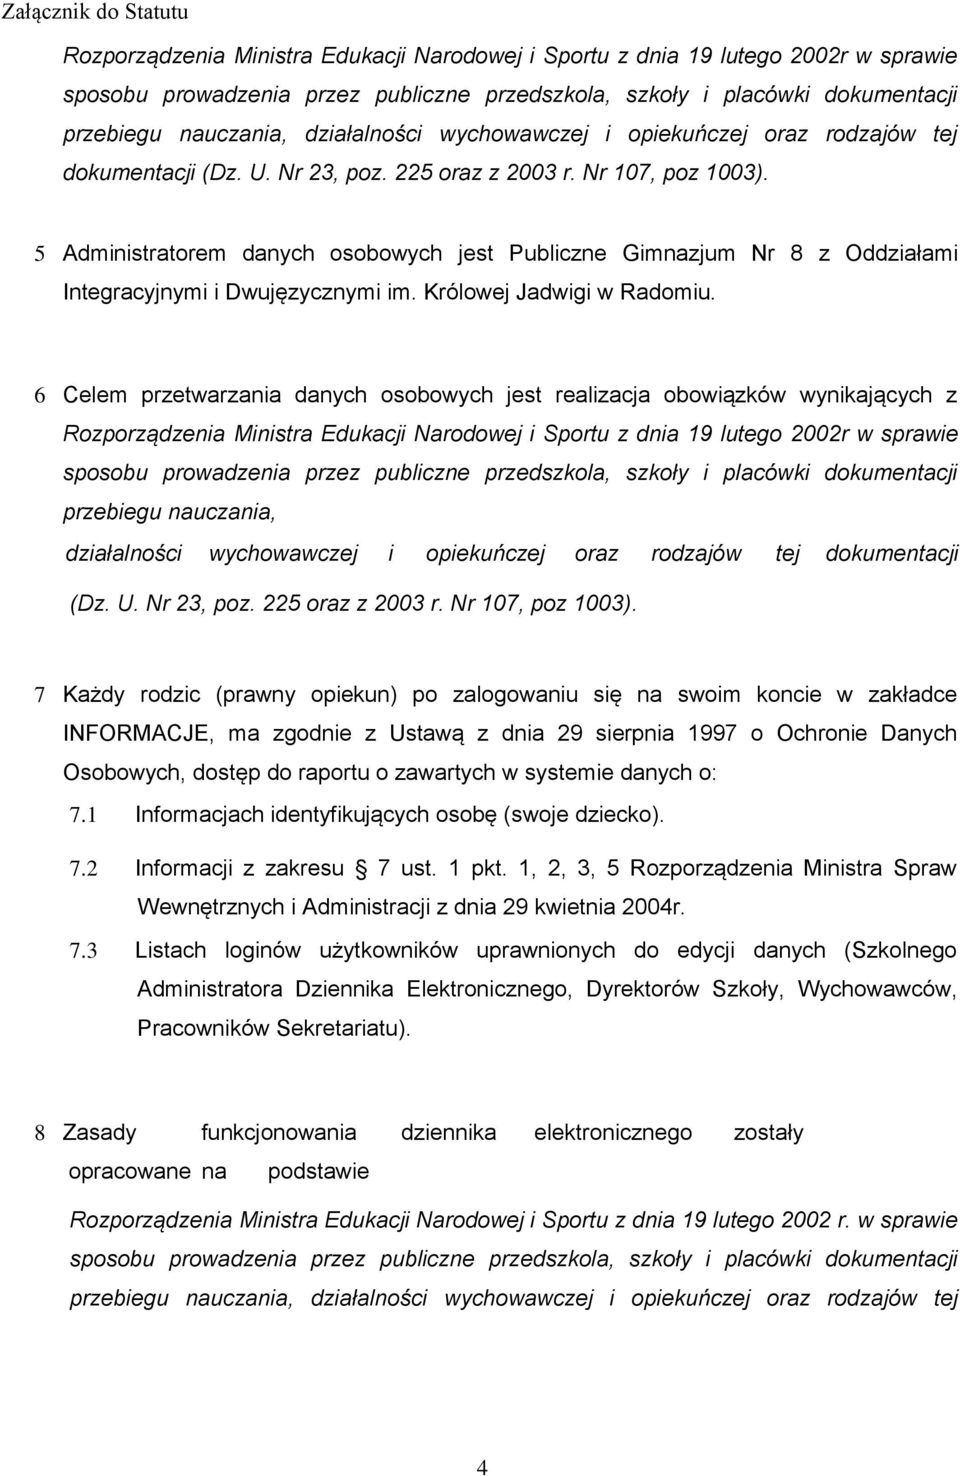 5 Administratorem danych osobowych jest Publiczne Gimnazjum Nr 8 z Oddziałami Integracyjnymi i Dwujęzycznymi im. Królowej Jadwigi w Radomiu.